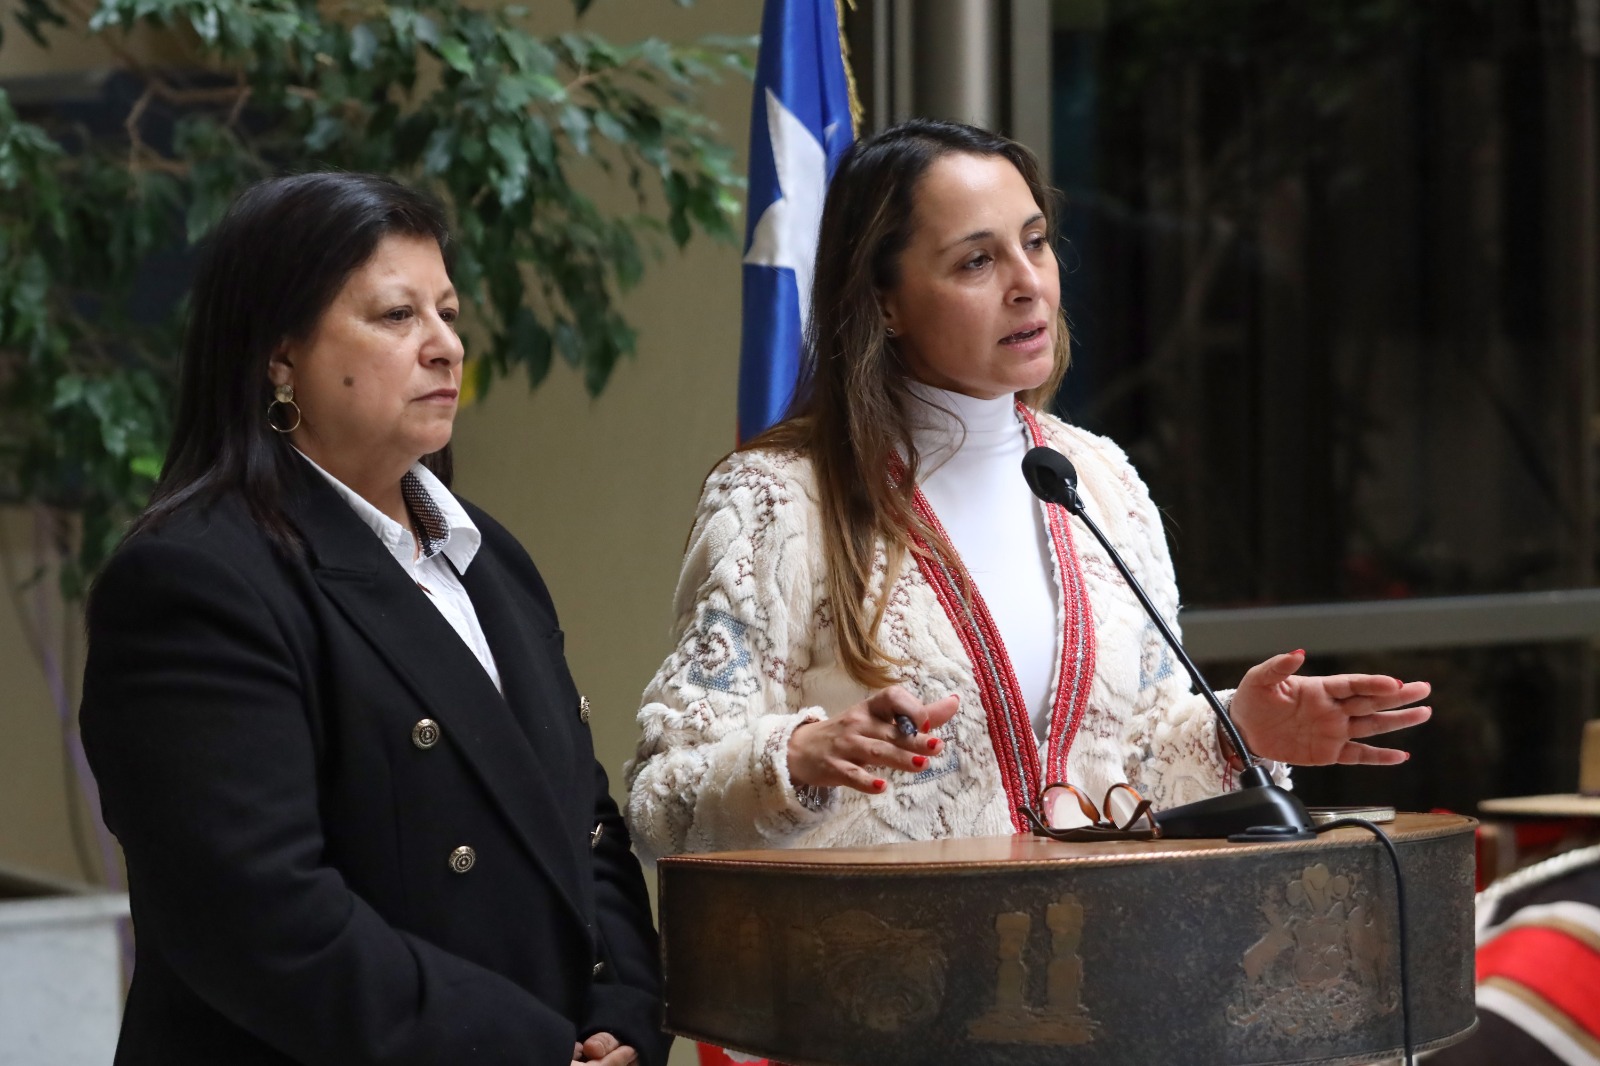 Diputada Carla Morales solicita a la Subsecretaría de la Niñez información por alza de casos e impunidad en delitos de explotación sexual infantil